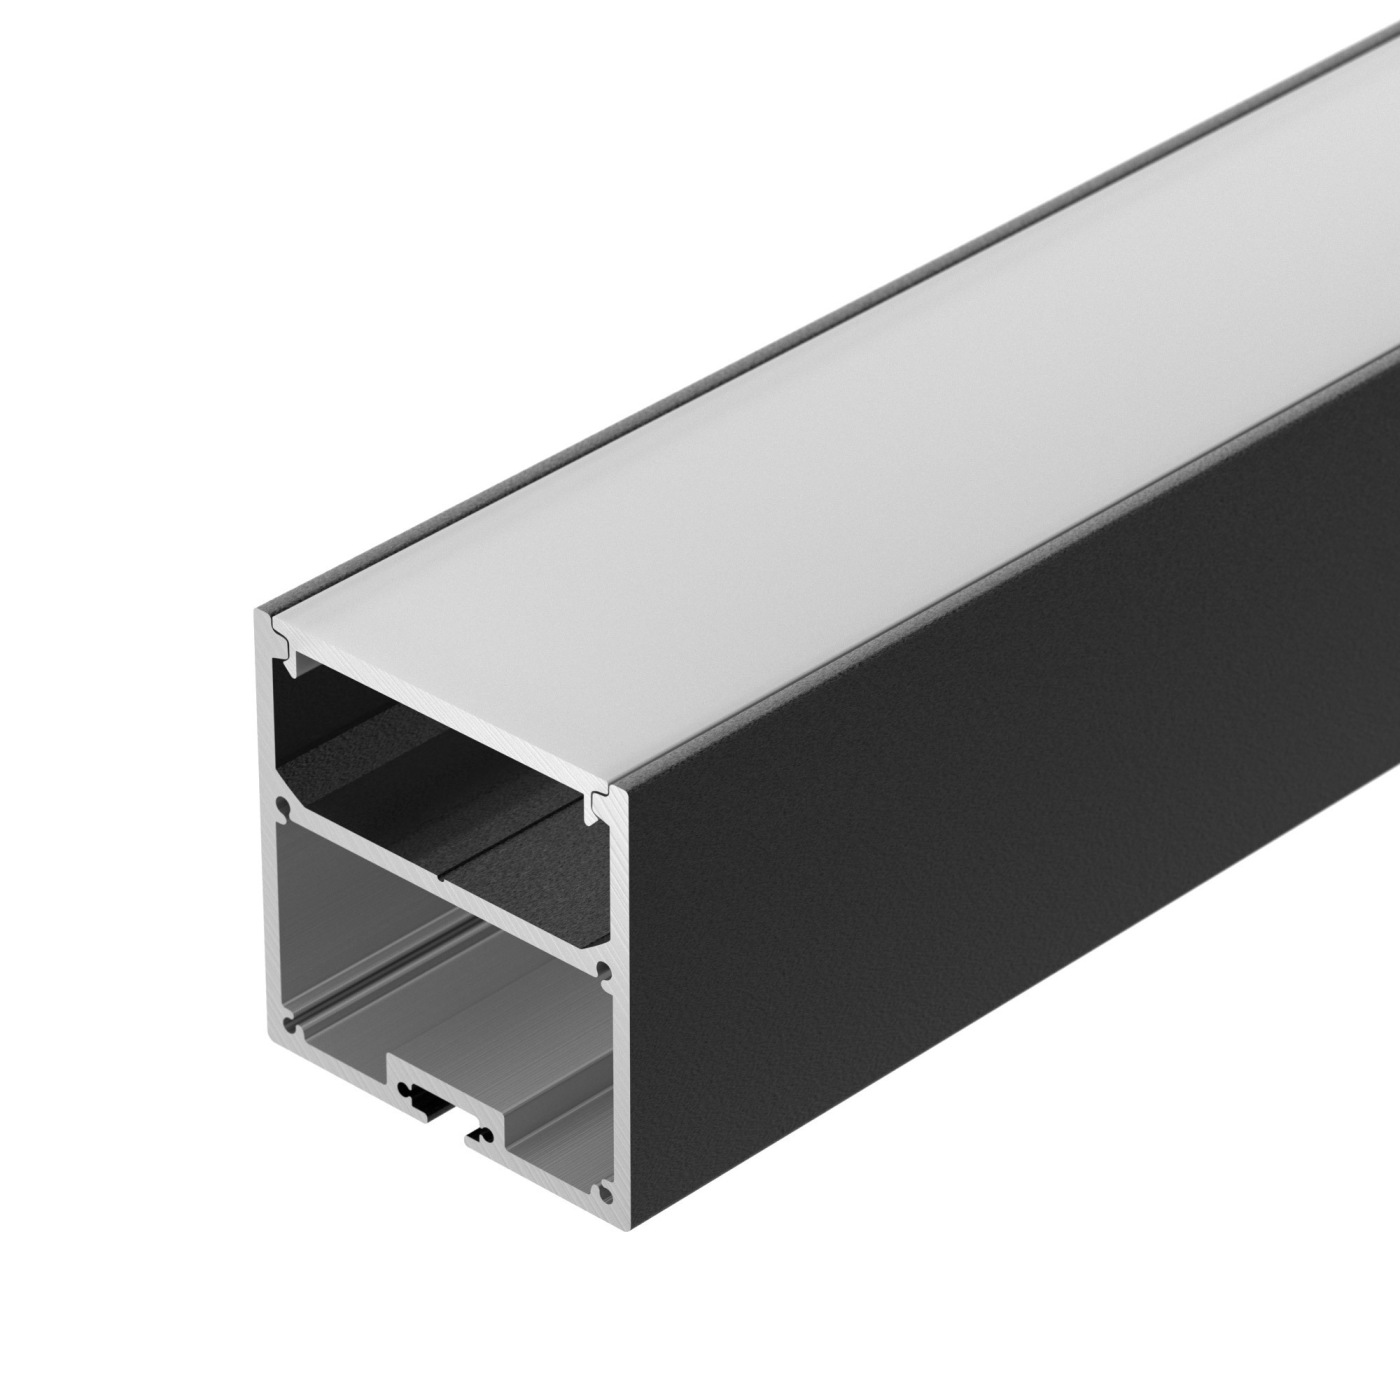 Профиль с экраном SL-LINE-5050-2500 BLACK+OPAL профиль алюминиевый накладной подвесной с отсеком для бп серебро cab267